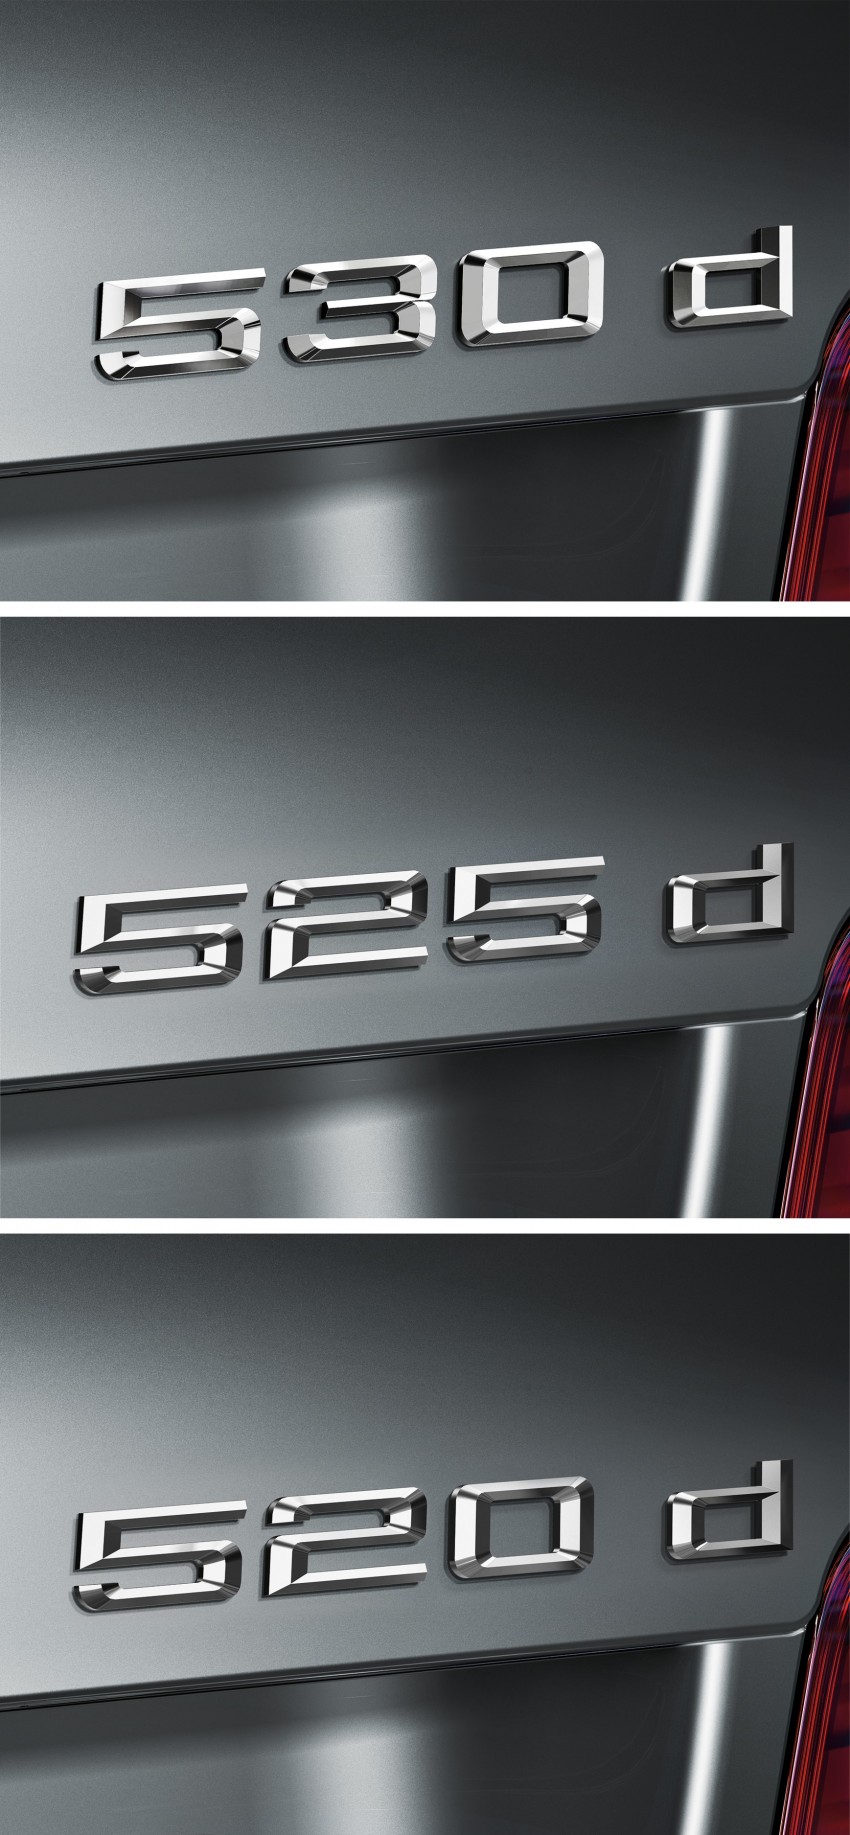 All-new F10 BMW 5-Series Sedan: full details! 154862